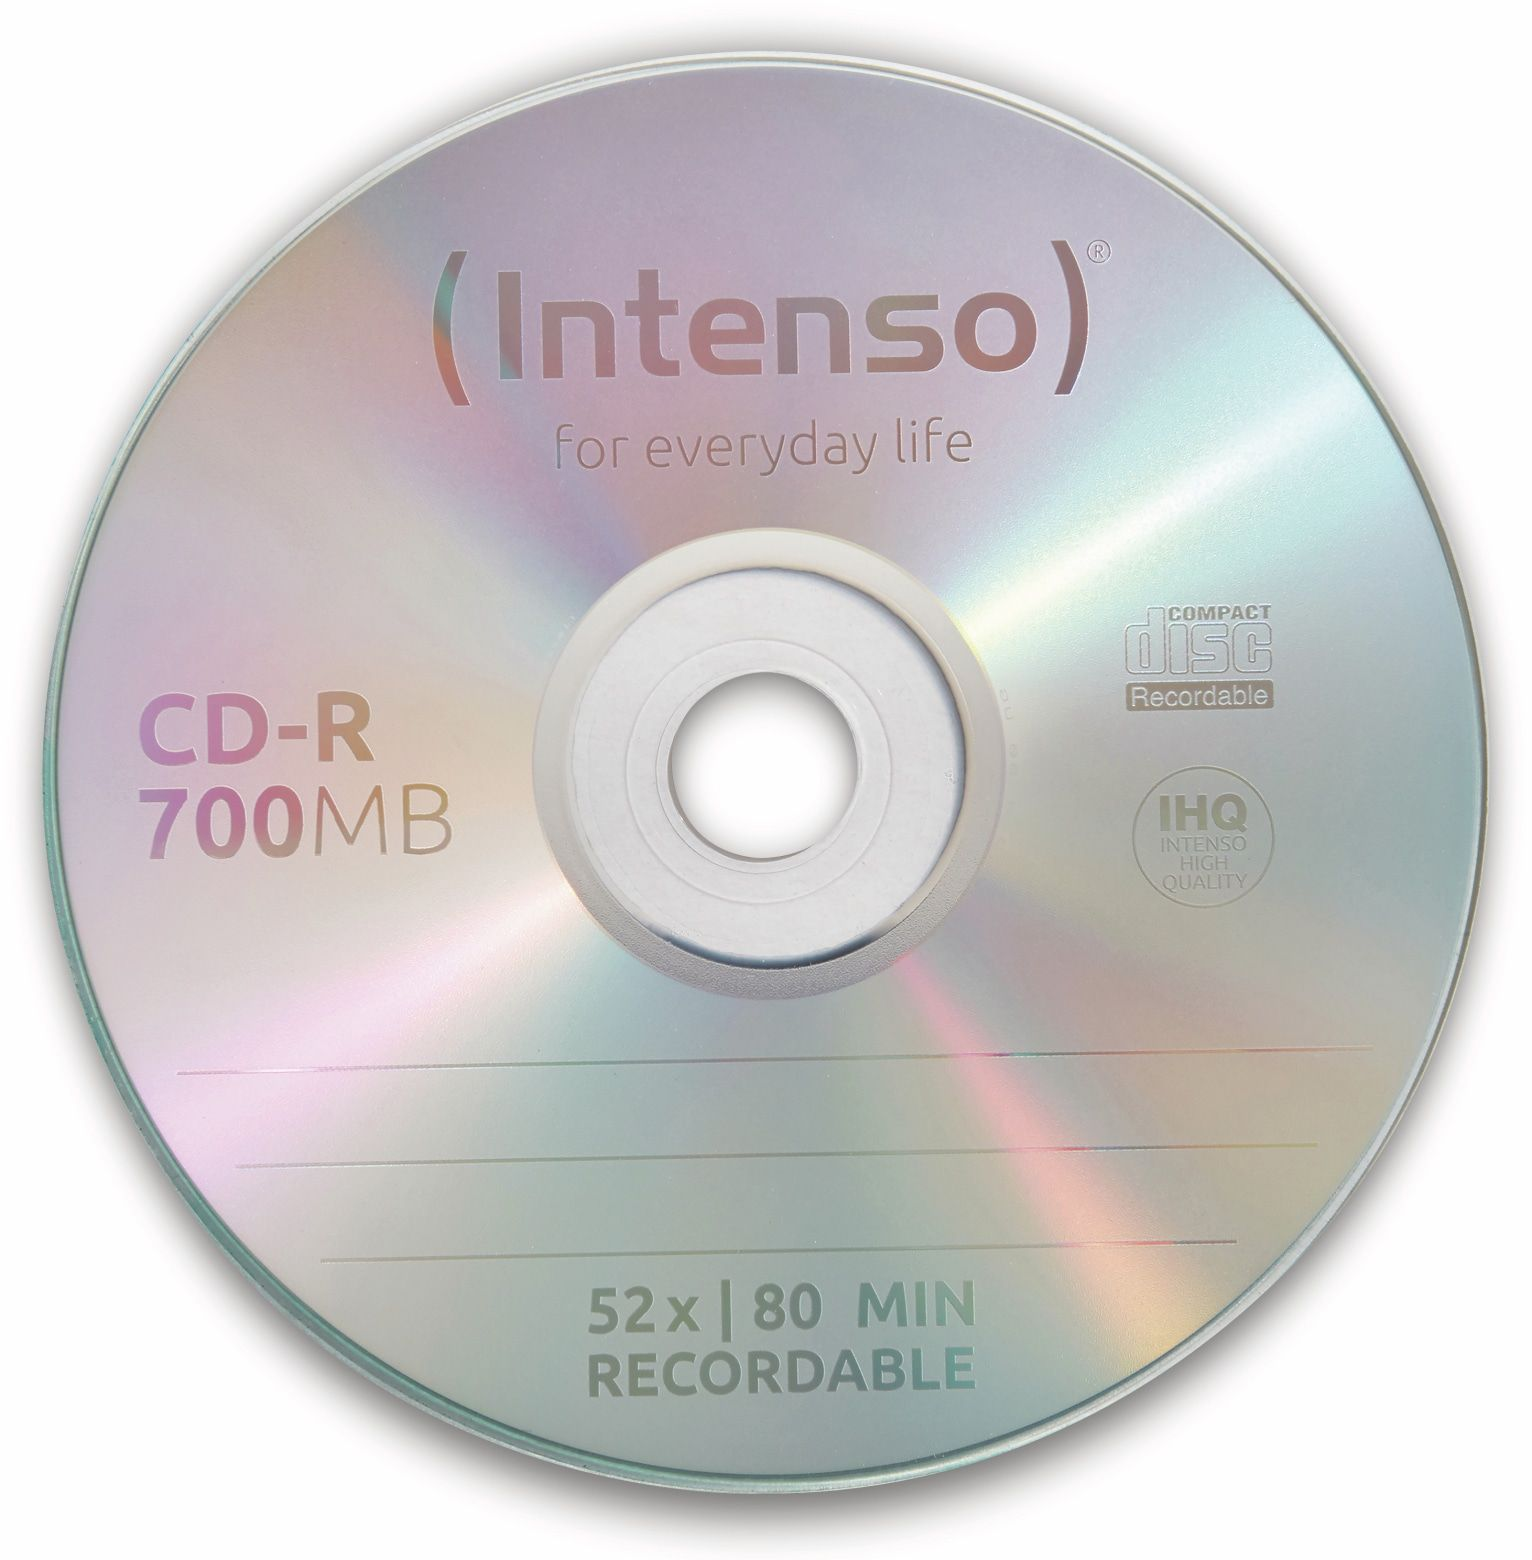 700 CD-R CD-R MB, 1001124 80 schwarz/gelb INTENSO SPINDEL 25ER